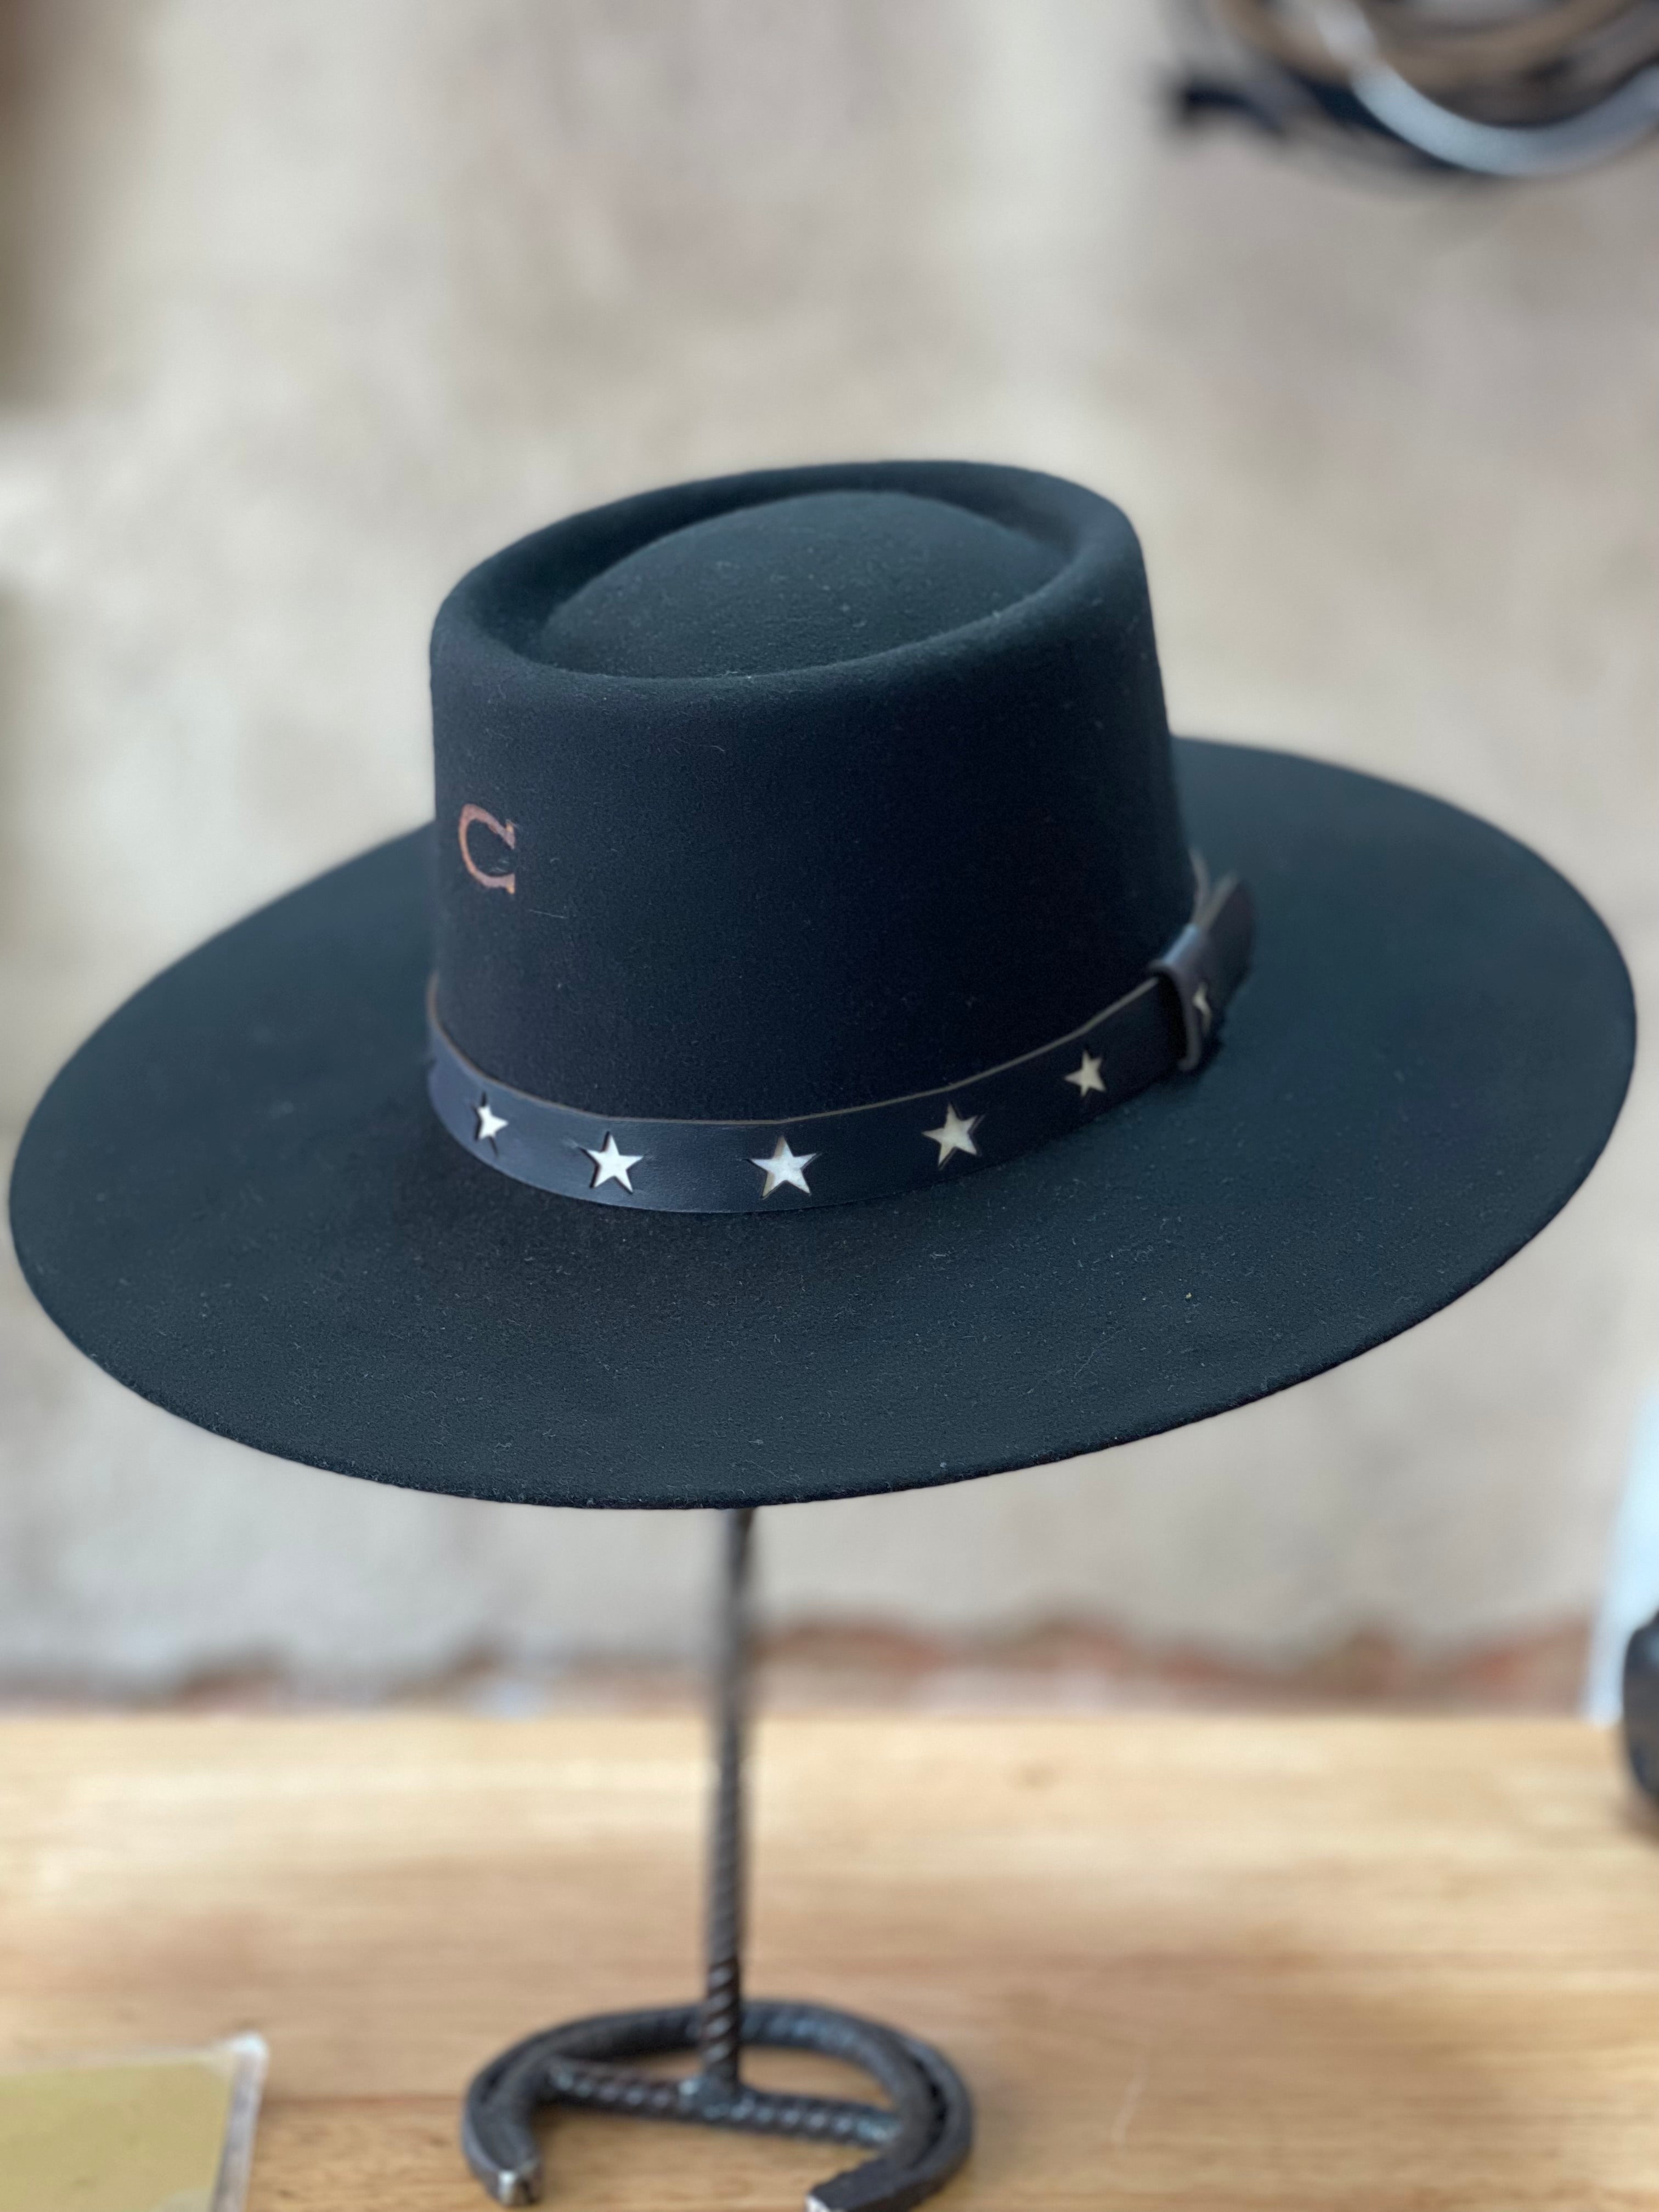 Stetson Black Hawk Crushable Cowboy Hat Size: S